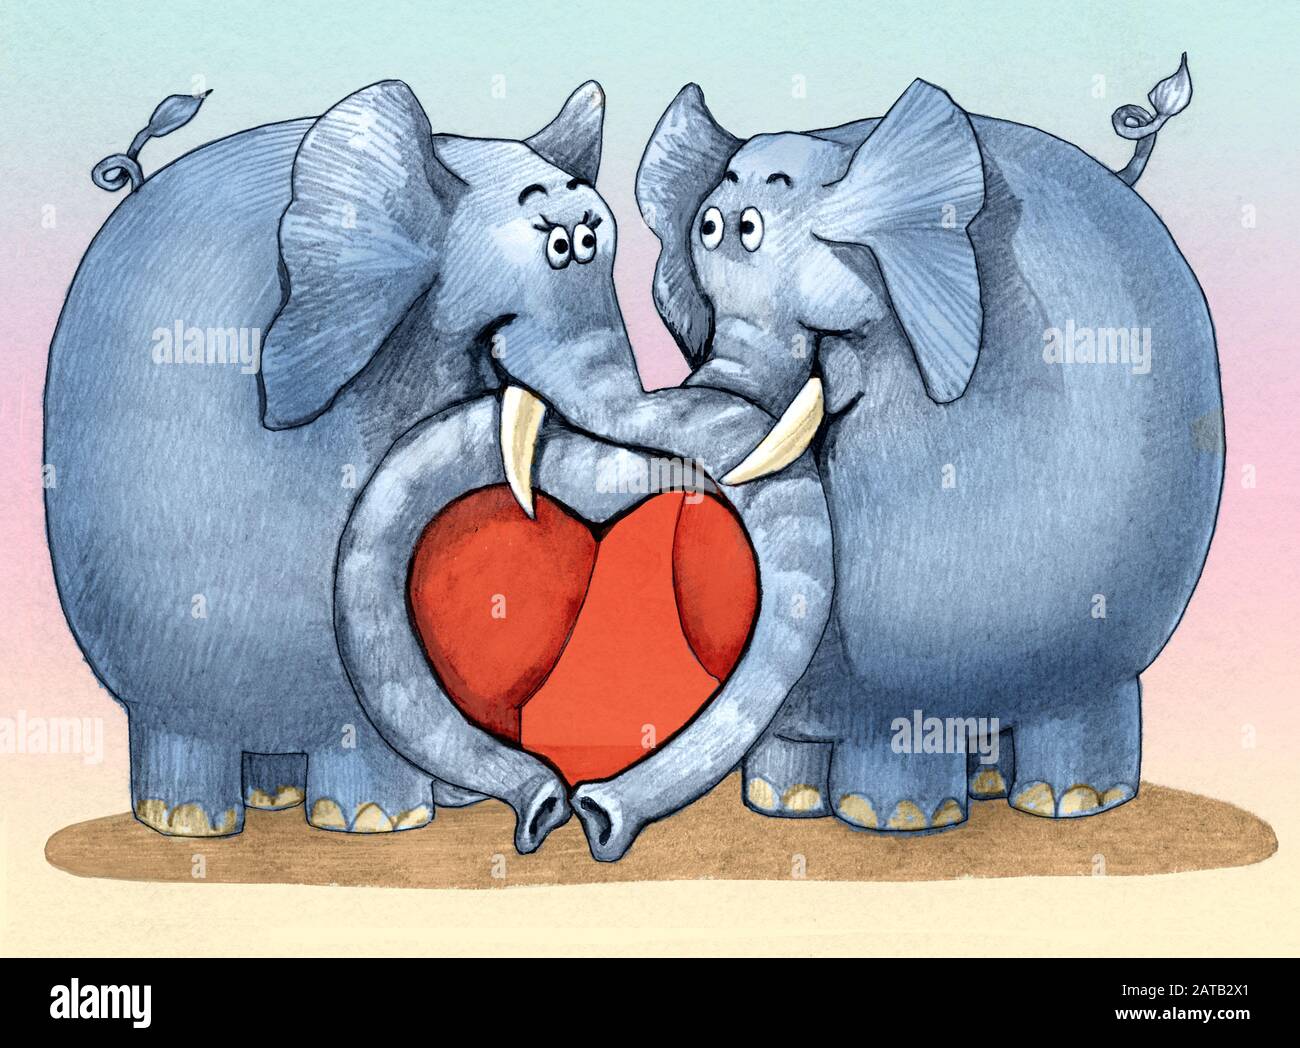 les éléphants traversent la proposcis et forment un coeur ont les yeux dans l'amour ont les yeux dans l'amour illustration romantique amusant Banque D'Images